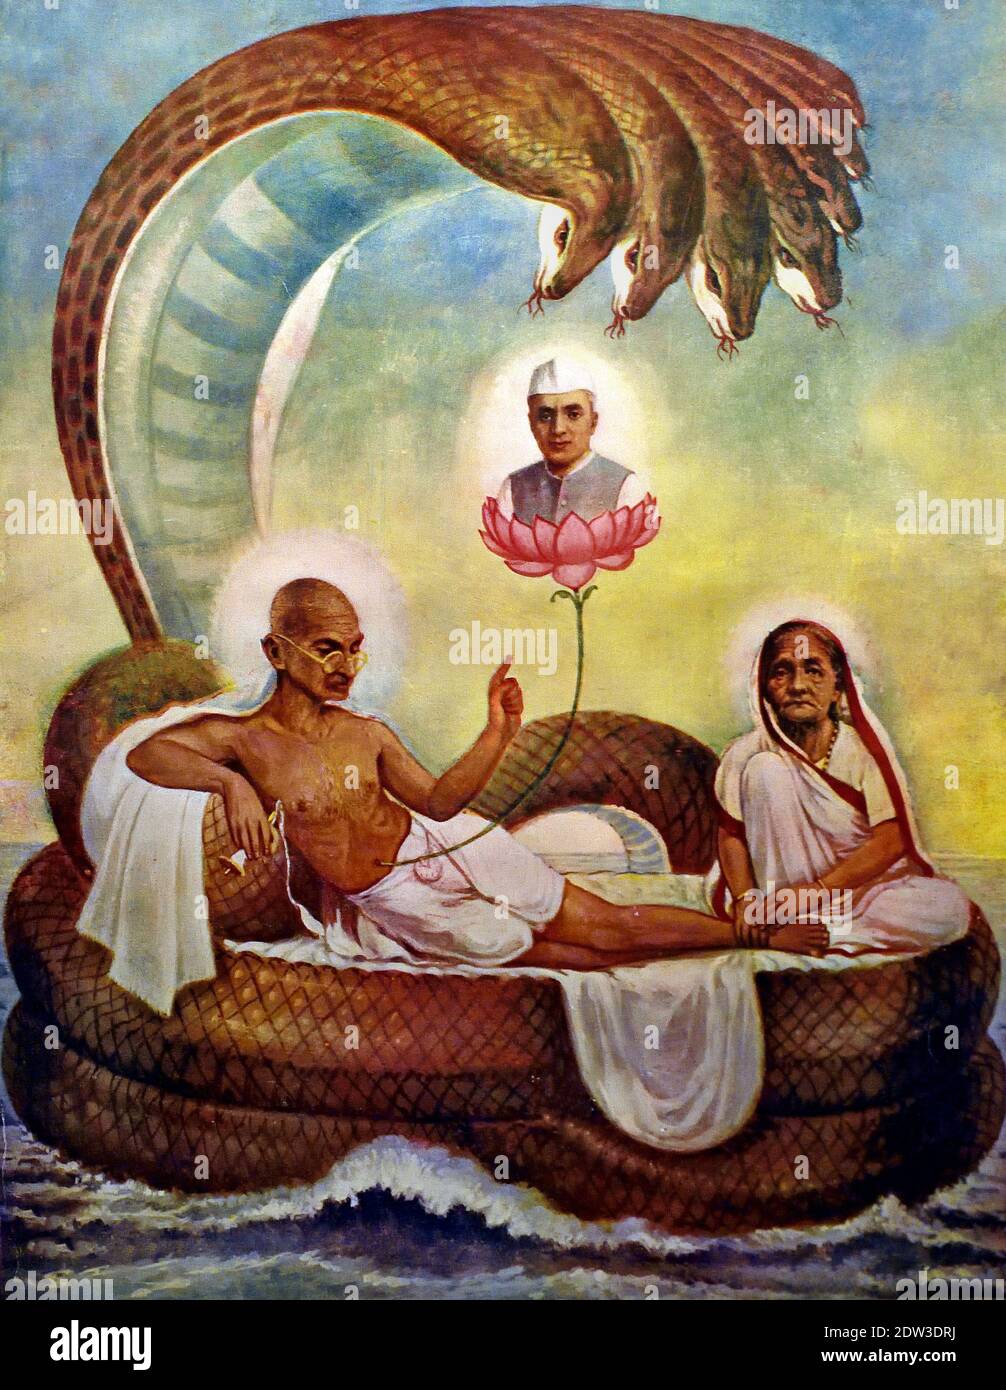 Gandhi comme Vishnu sur le serpent Ananta dans les représentations de Vishnu un lotus grandit de son nombril sur lequel se trouve Brahma, symbolisant la création. Inde, Indien, ( Mahatma Gandhi (1869-1948, Mohandas Karamchand Gandhi) défenseur de la liberté et partisan de la campagne non violente. Pays. ) Banque D'Images